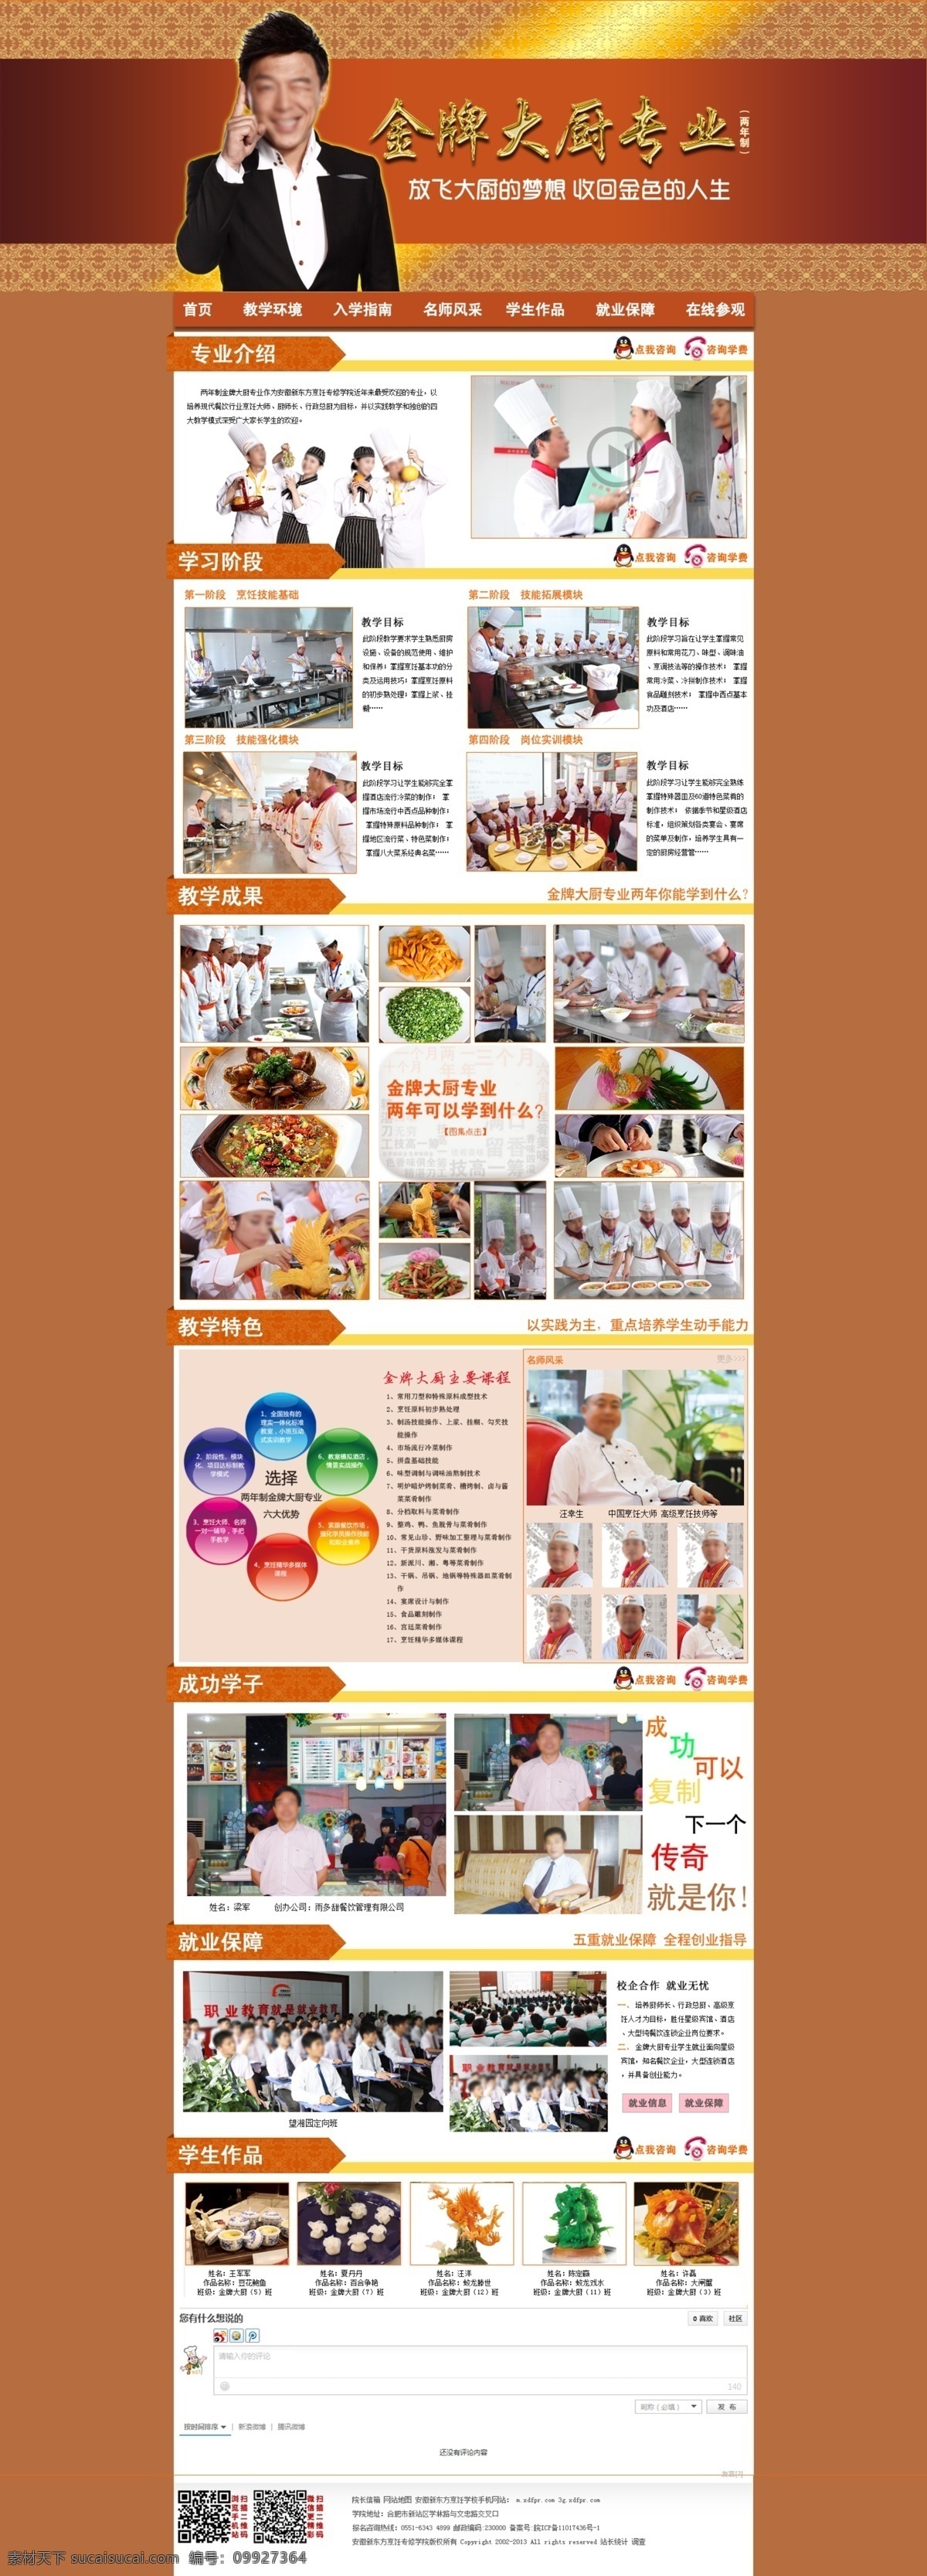 厨师 网页模板 页面设计 源文件 中文模板 专题 页面 模板下载 美女厨师 学厨师 黄渤 网页素材